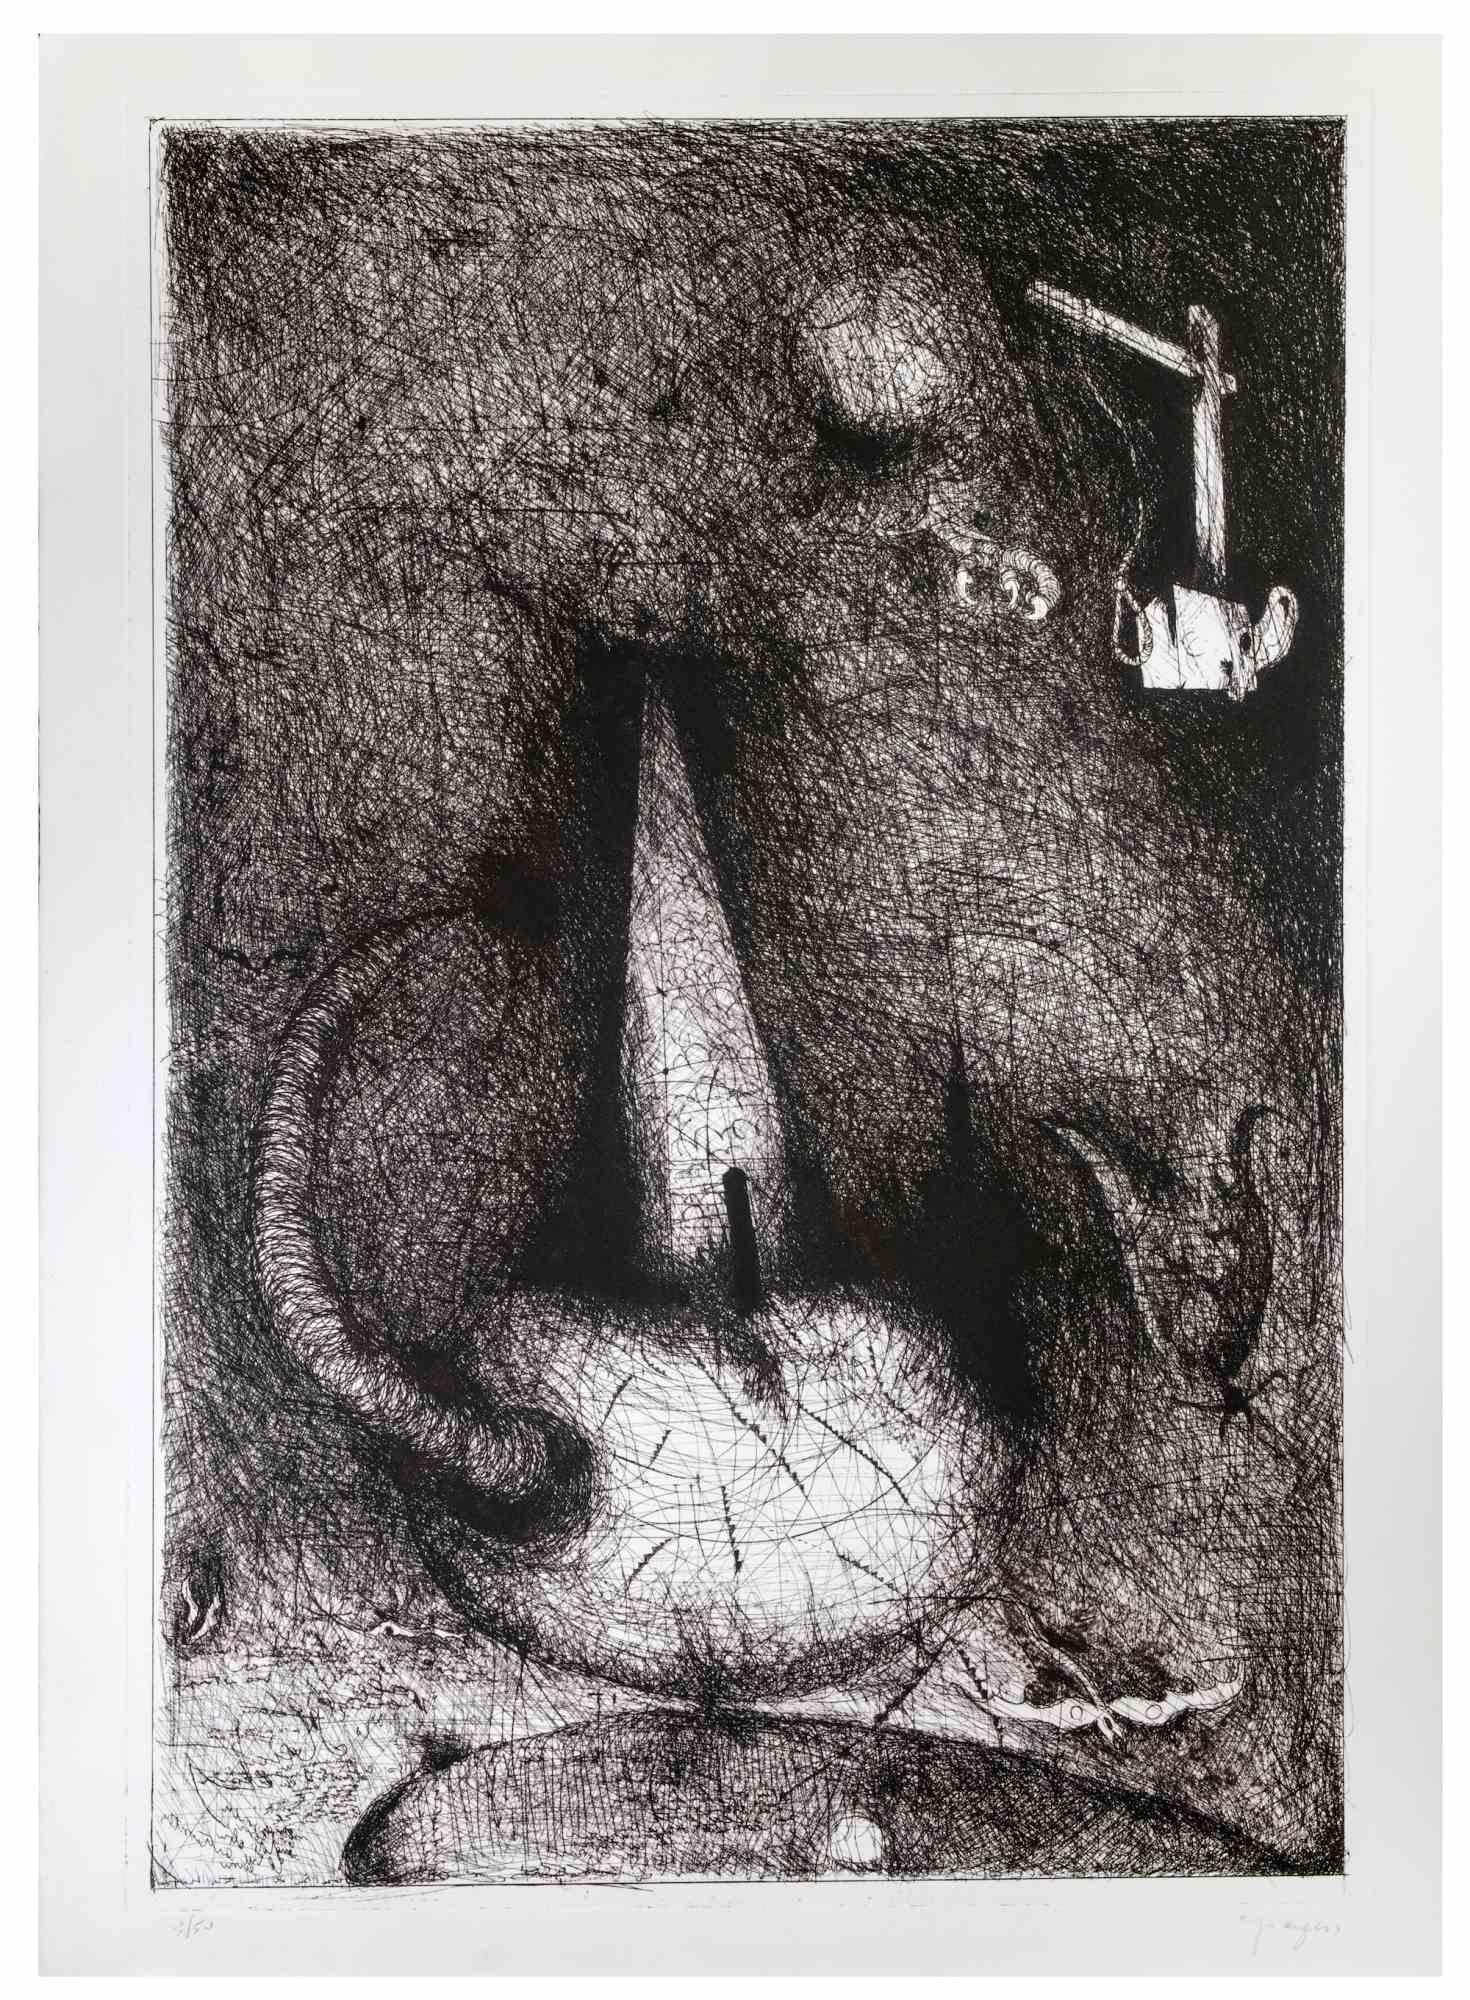 Composition abstraite est une gravure réalisée par Martine Goeyens à la fin du 20e siècle.

Signé à la main.

Tirages numérotés 3/50.

Bonnes conditions.

L'œuvre d'art est créée par des traits expressifs parfaits.